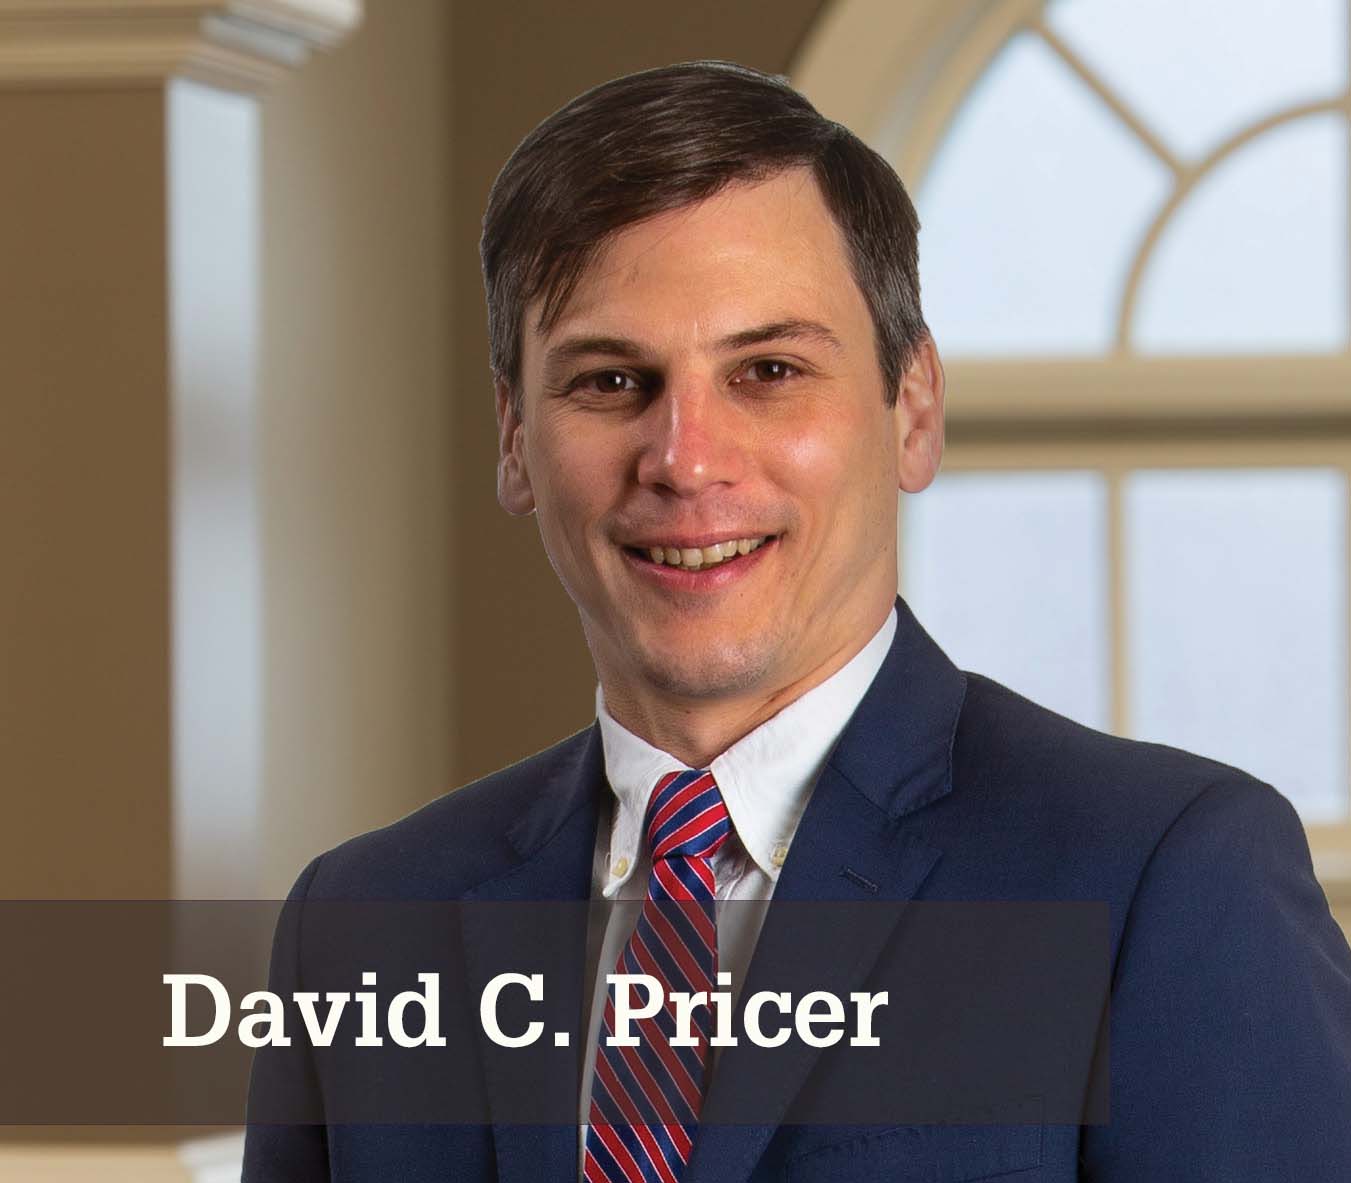 David C. Pricer